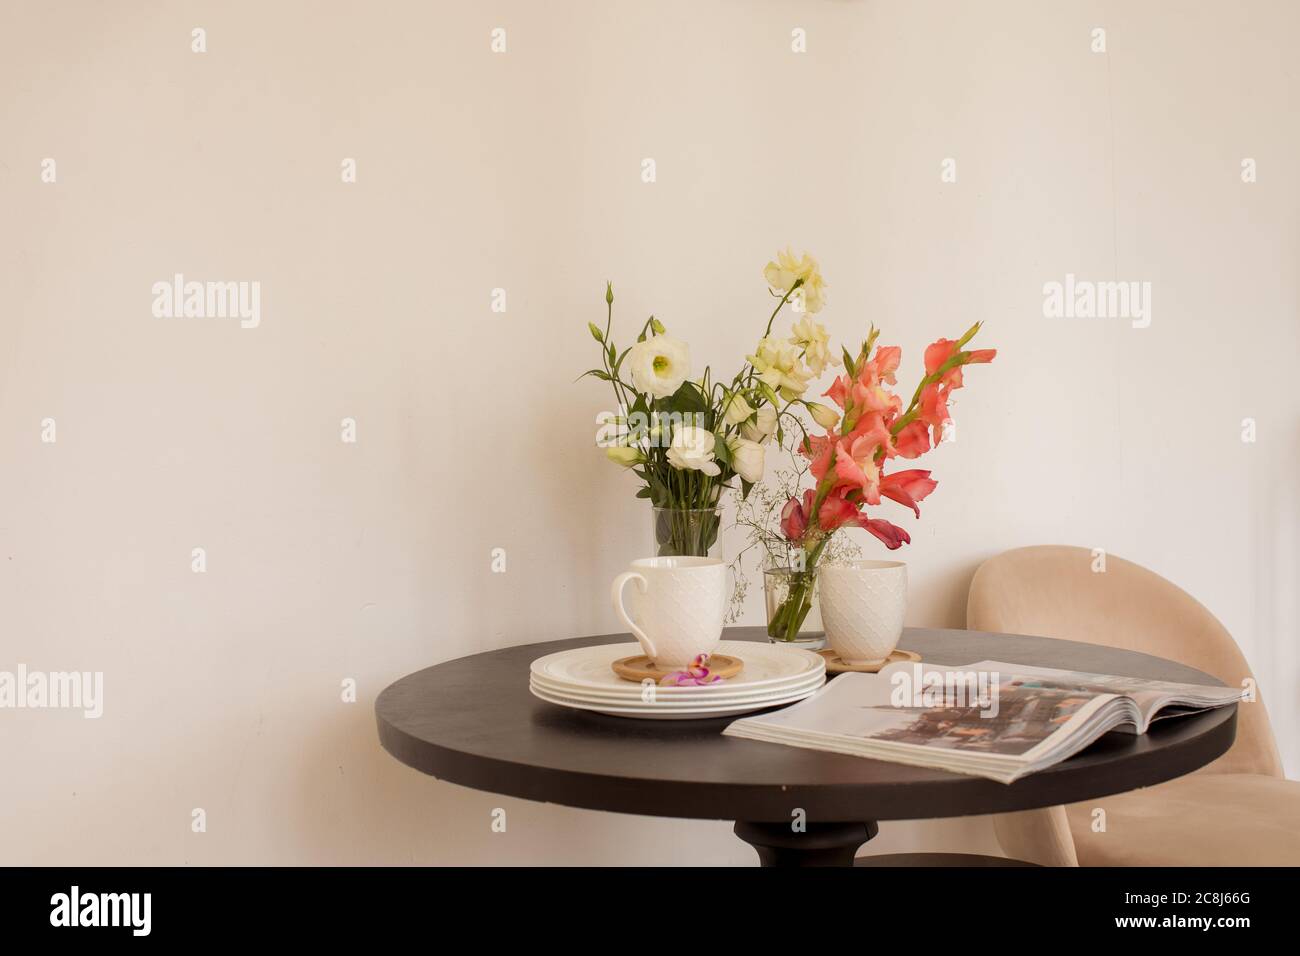 Fiori e riviste vicino a stoviglie sul tavolo Foto Stock